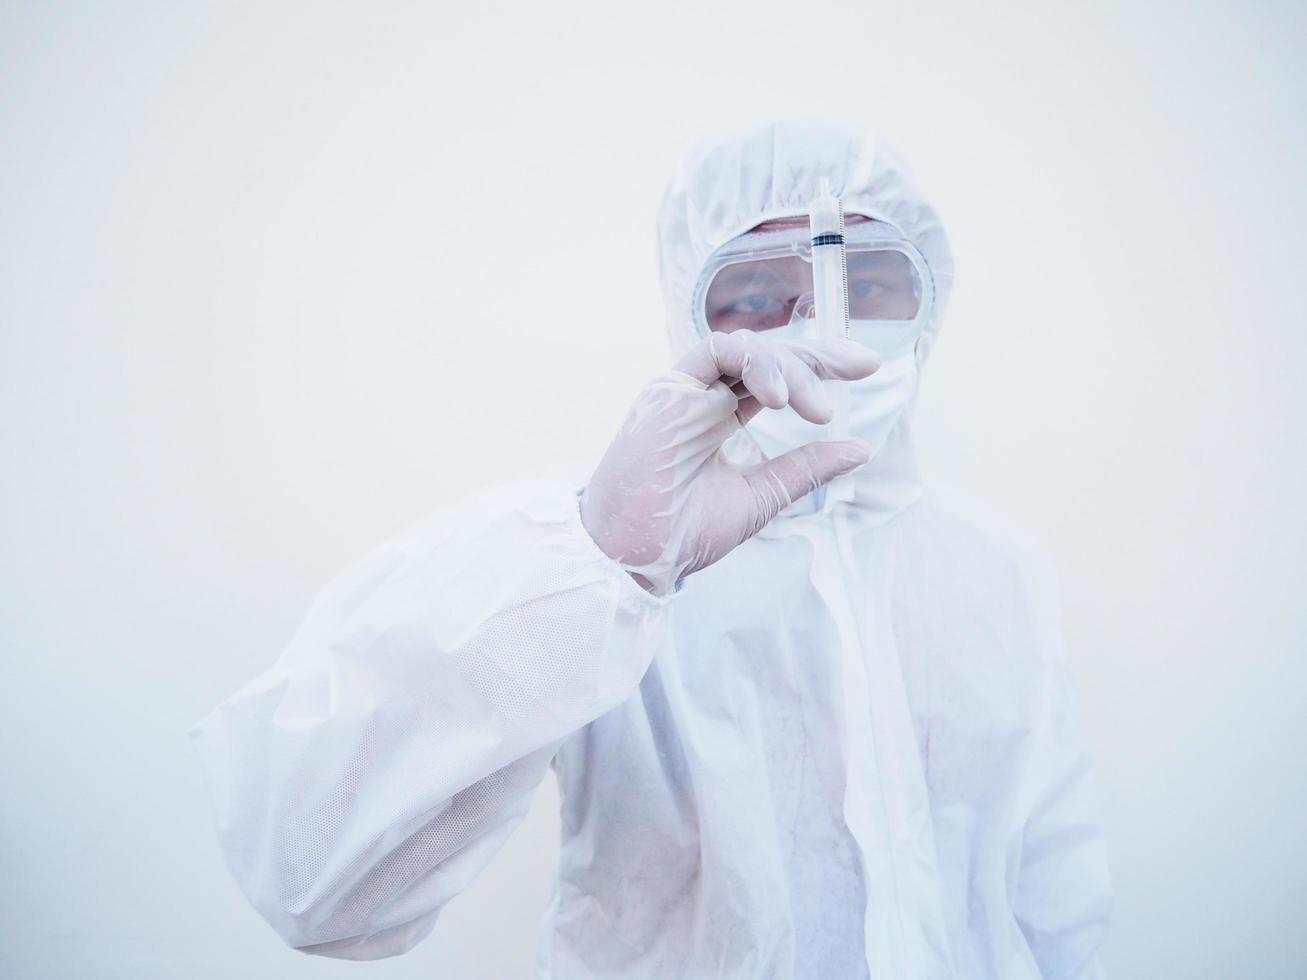 médecin ou scientifique asiatique en uniforme de suite epi tenant une seringue d'injection médicale. coronavirus ou covid-19 concept isolé fond blanc photo